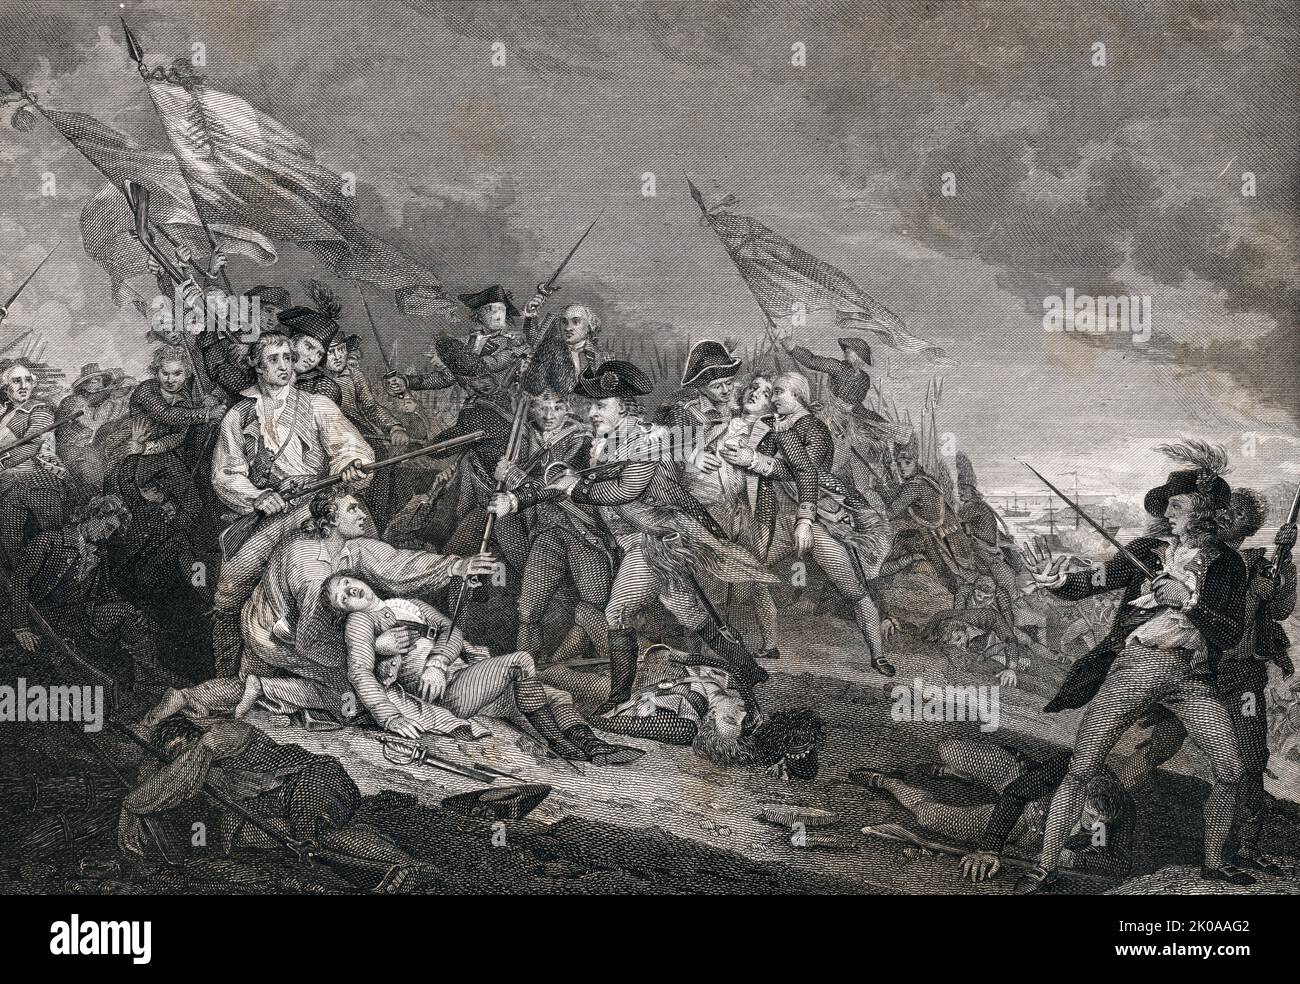 La bataille à Bunker Hill près de Boston, 17 juin 1775 par John Trumbull (1756-1843). L'imprimé montre des soldats britanniques et américains dans des combats de main en main pendant la bataille de Bunker Hill. La bataille de Bunker Hill a été menée pendant le siège de Boston dans la première étape de la guerre d'indépendance américaine Banque D'Images